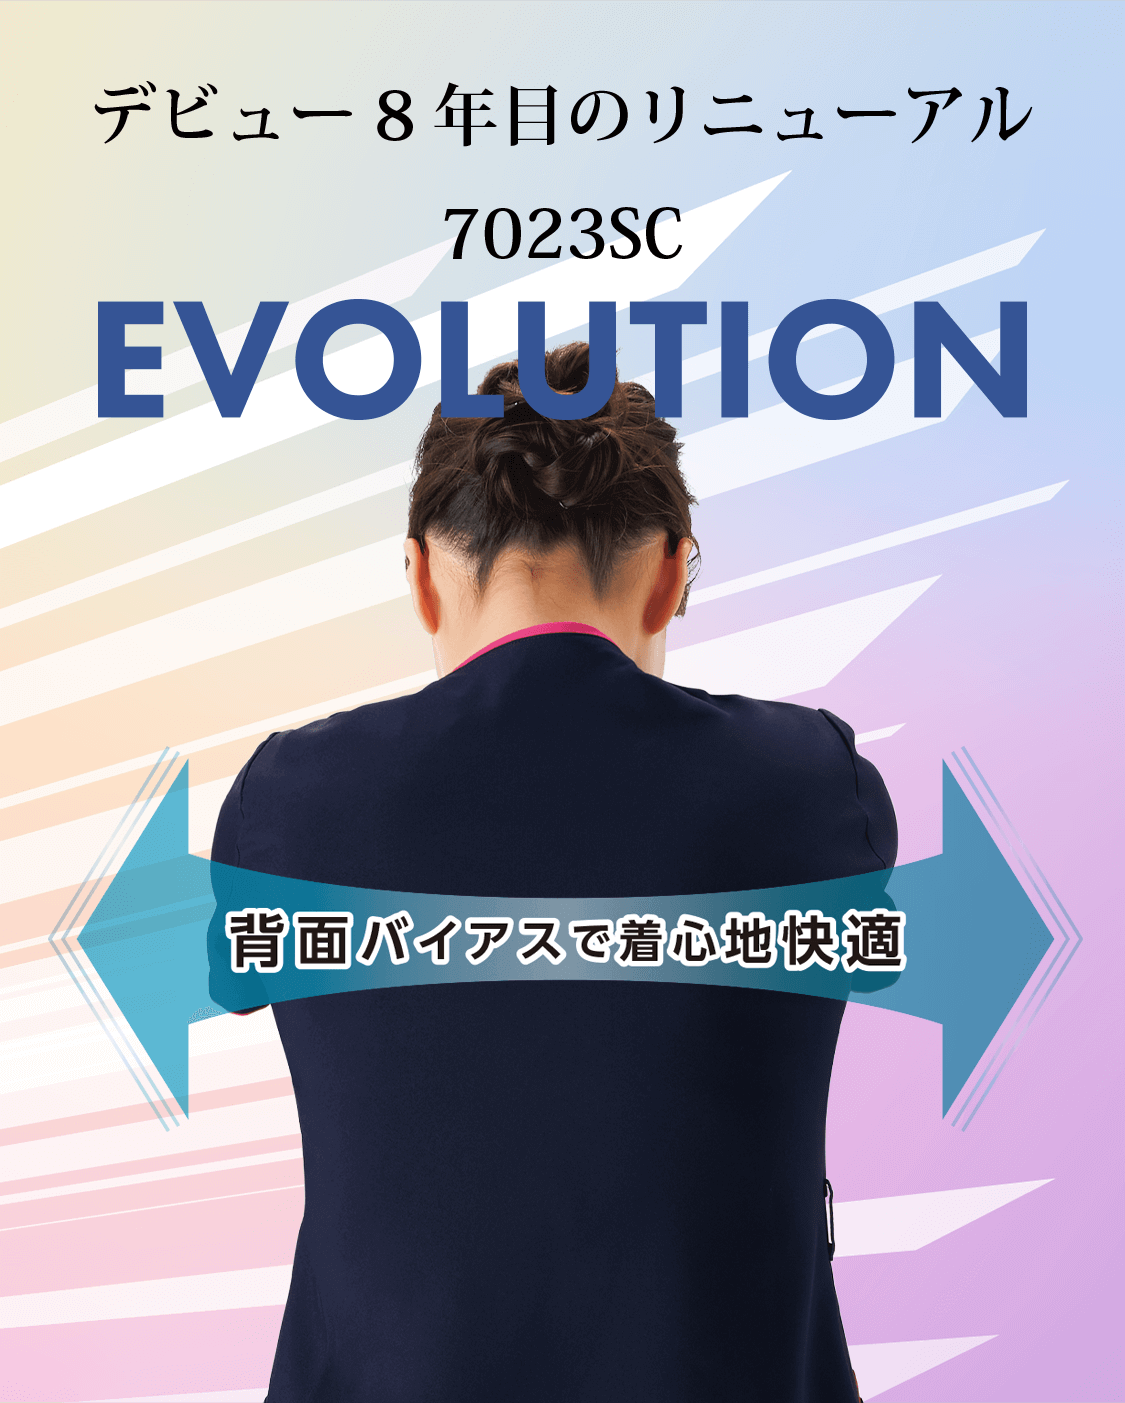 デビュー8年目のリニューアル 7023SC EVOLUTION